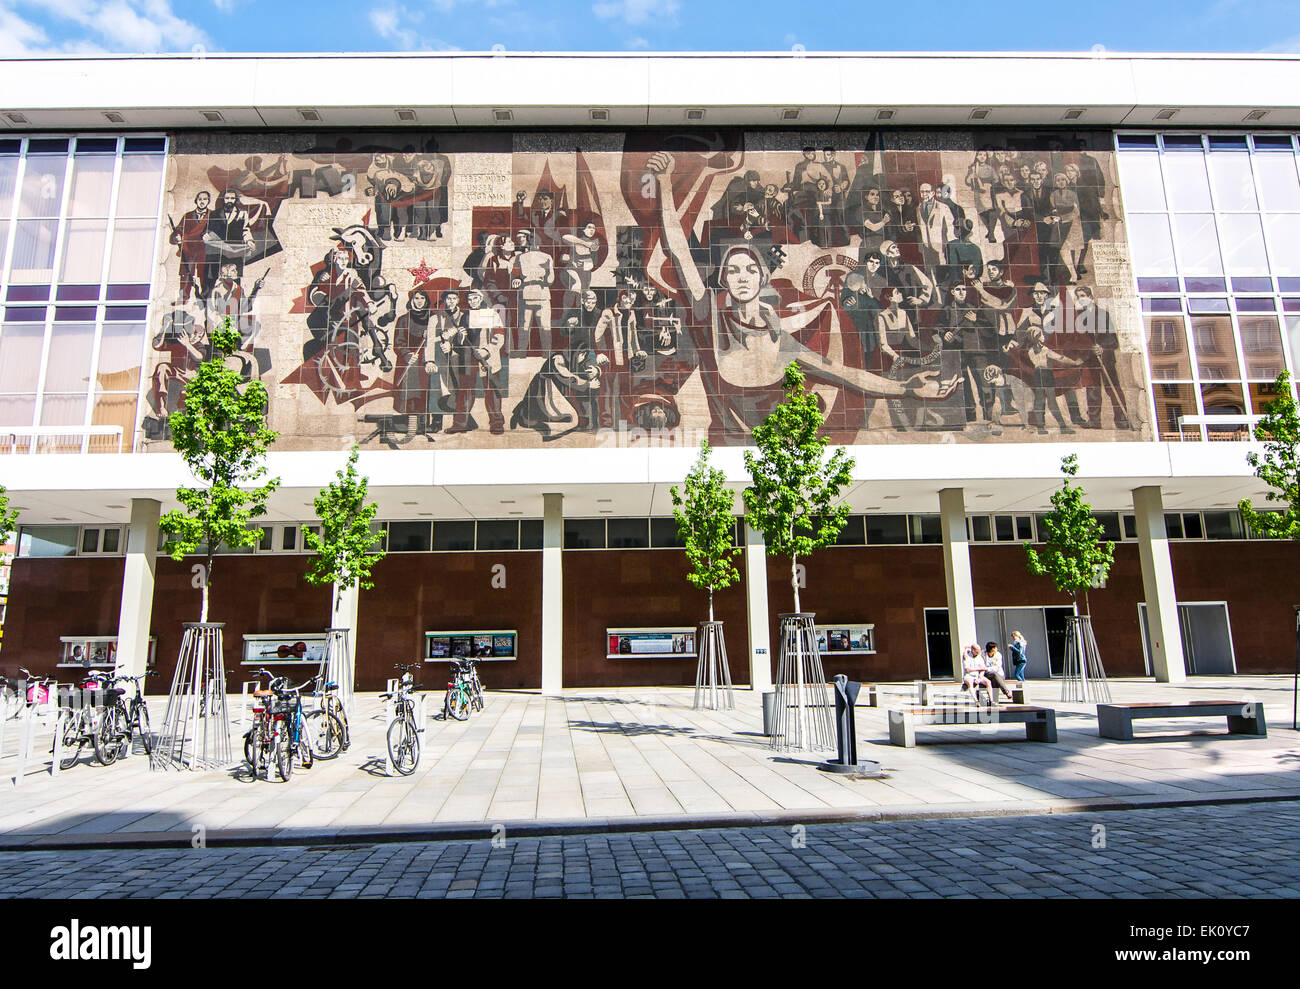 Fresque à Dresde, en Allemagne en l'honneur du gouvernement communiste qui était précédemment au pouvoir après la Seconde Guerre mondiale. Banque D'Images